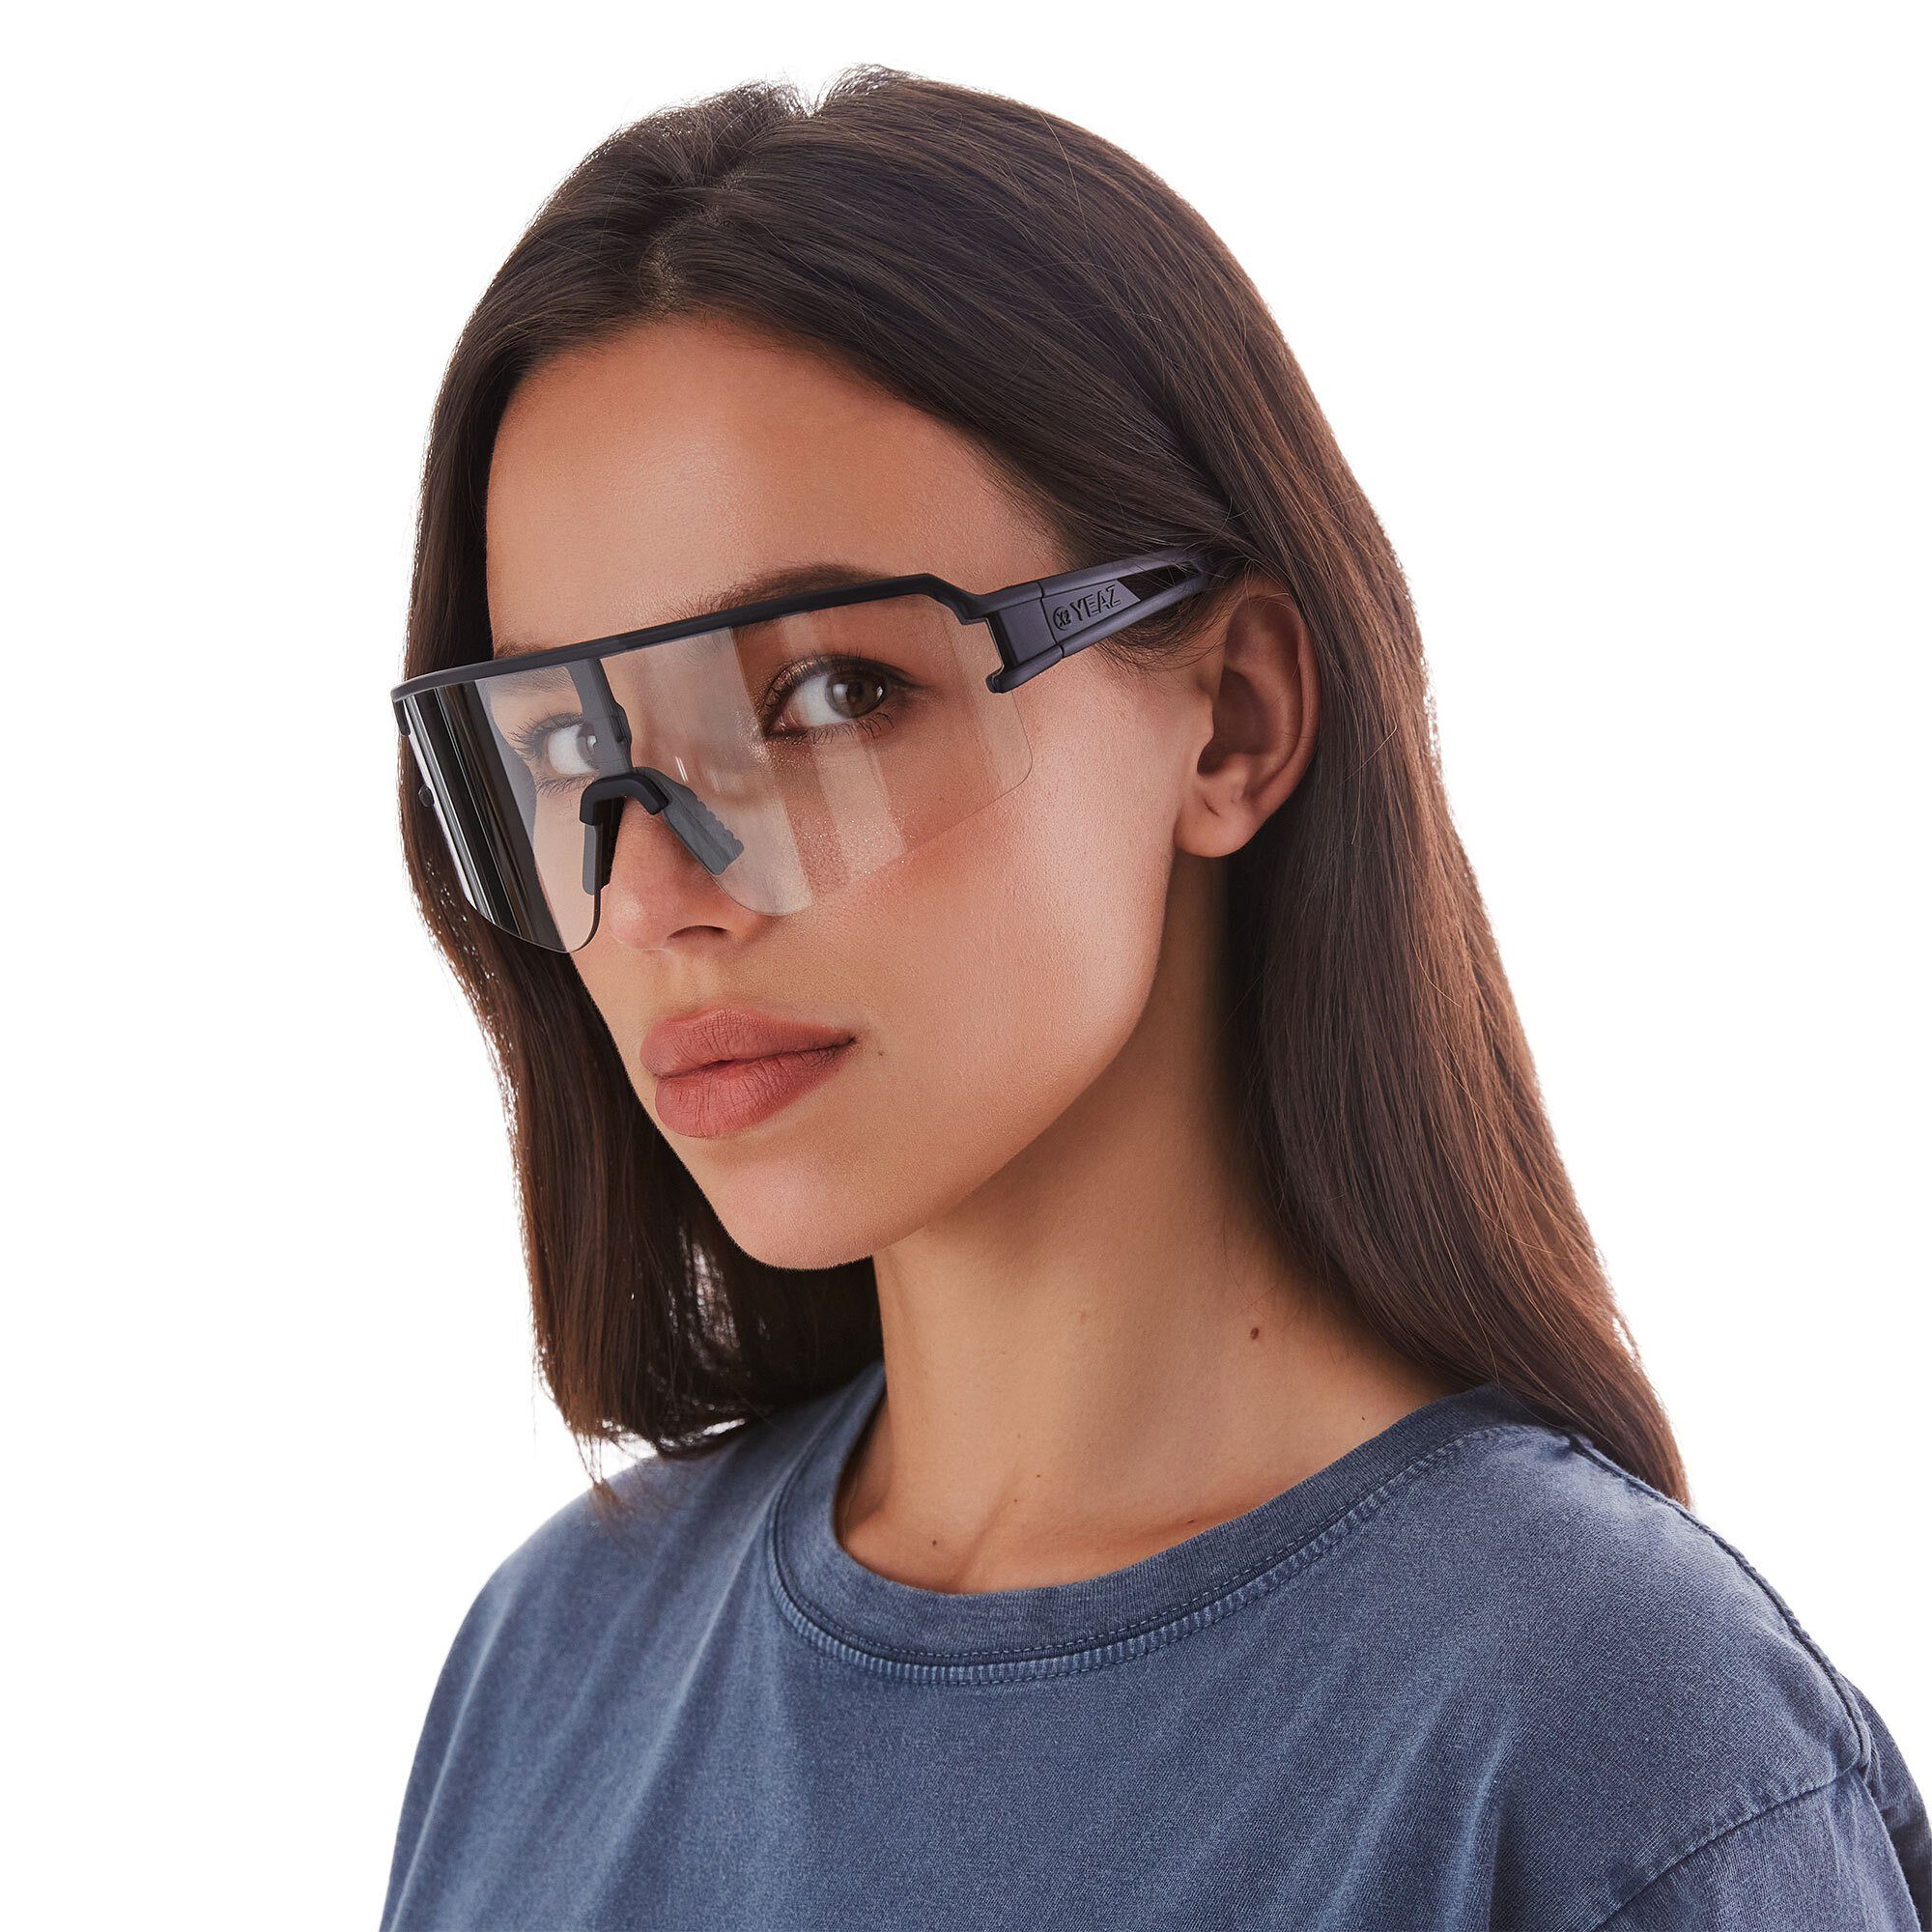 YEAZ Sportbrille SUNSPOT transparent weiß/transparent, schwarz / sport-sonnenbrille Sport-Sonnenbrille